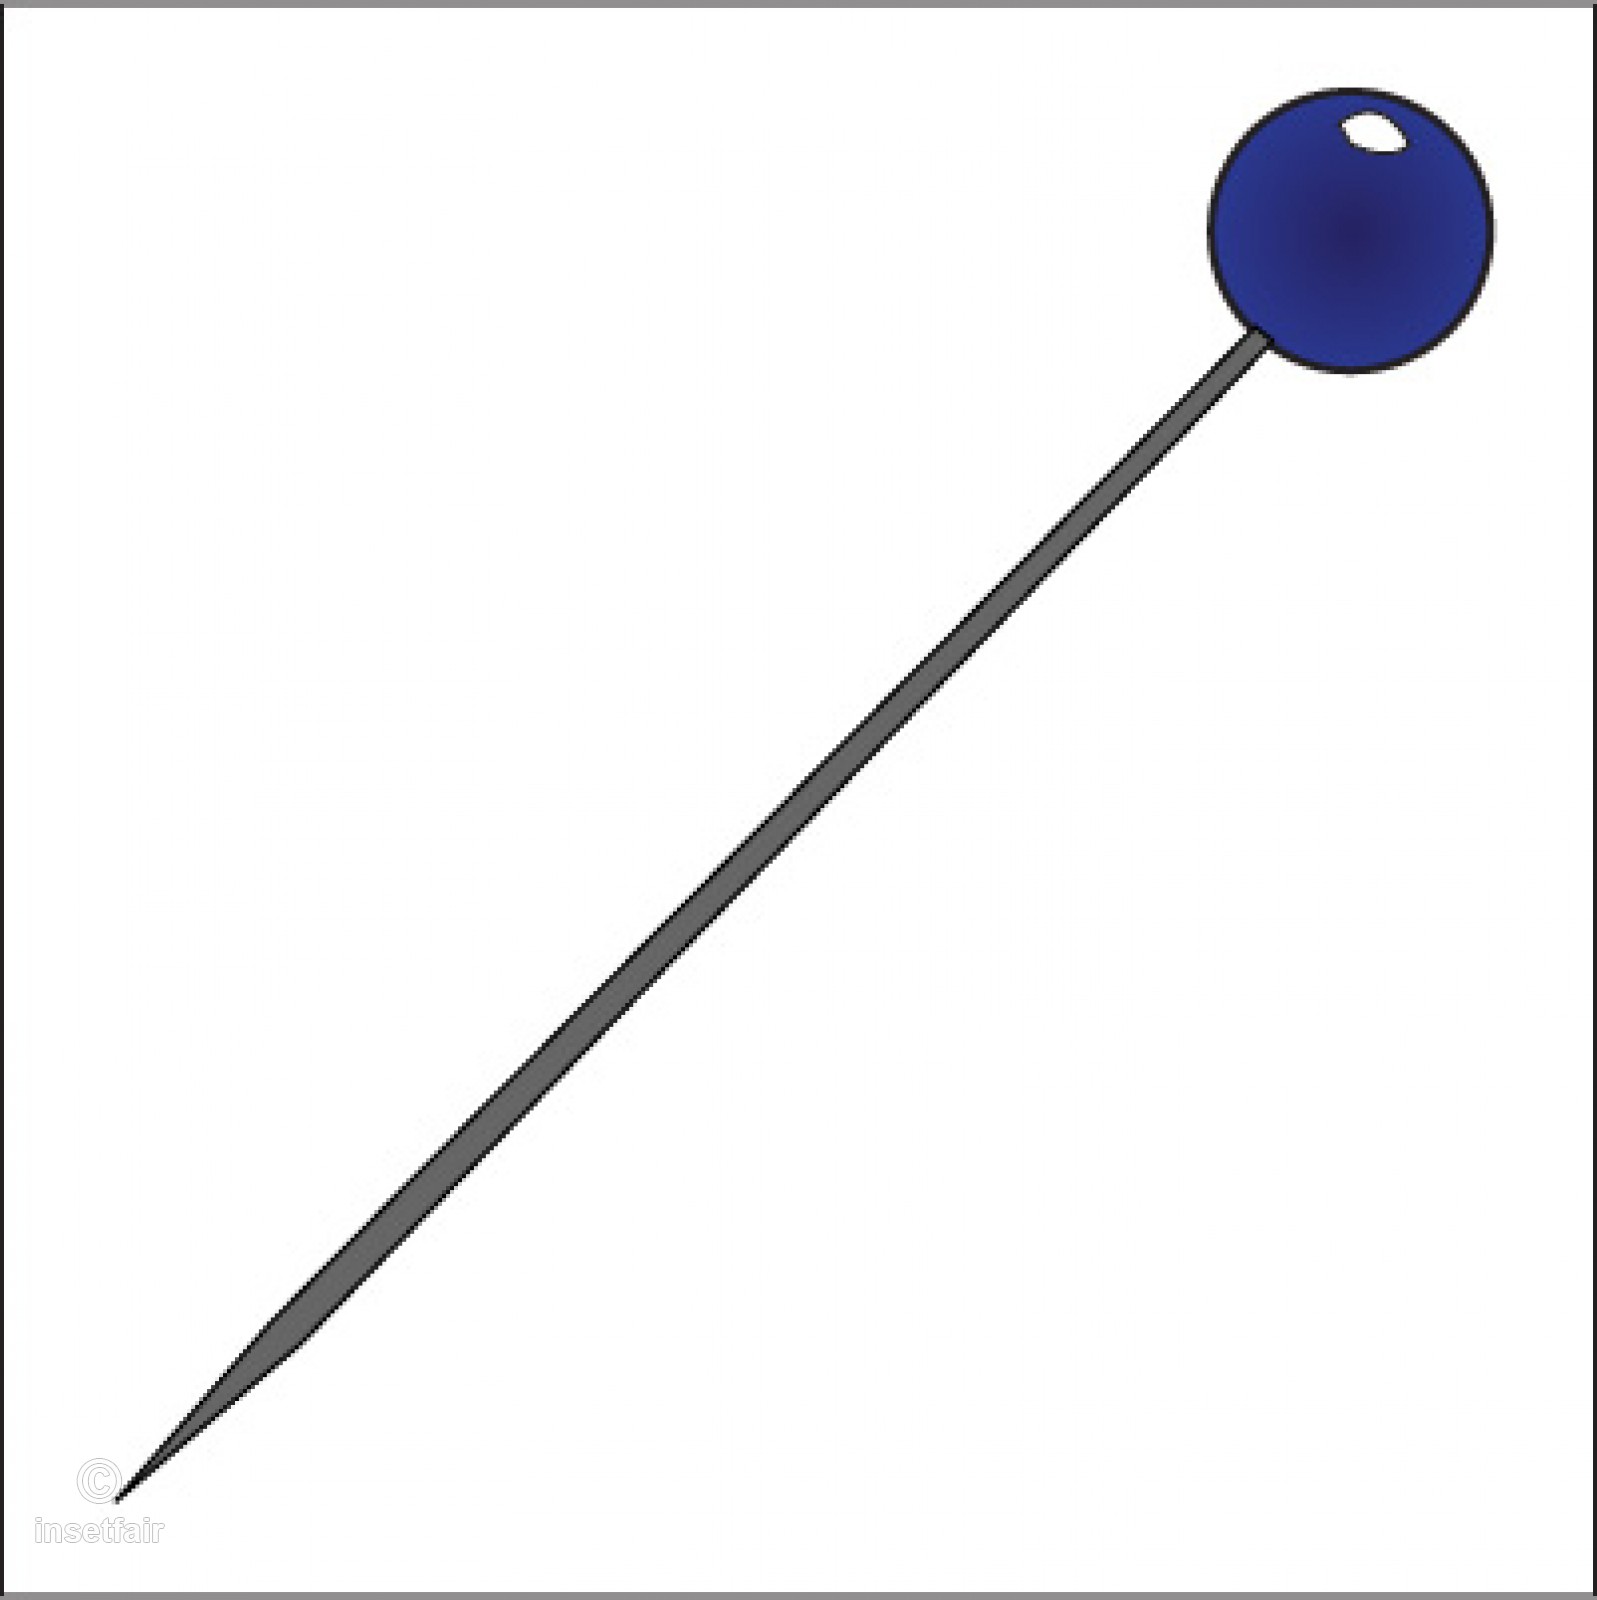 pin clipart sewing pin